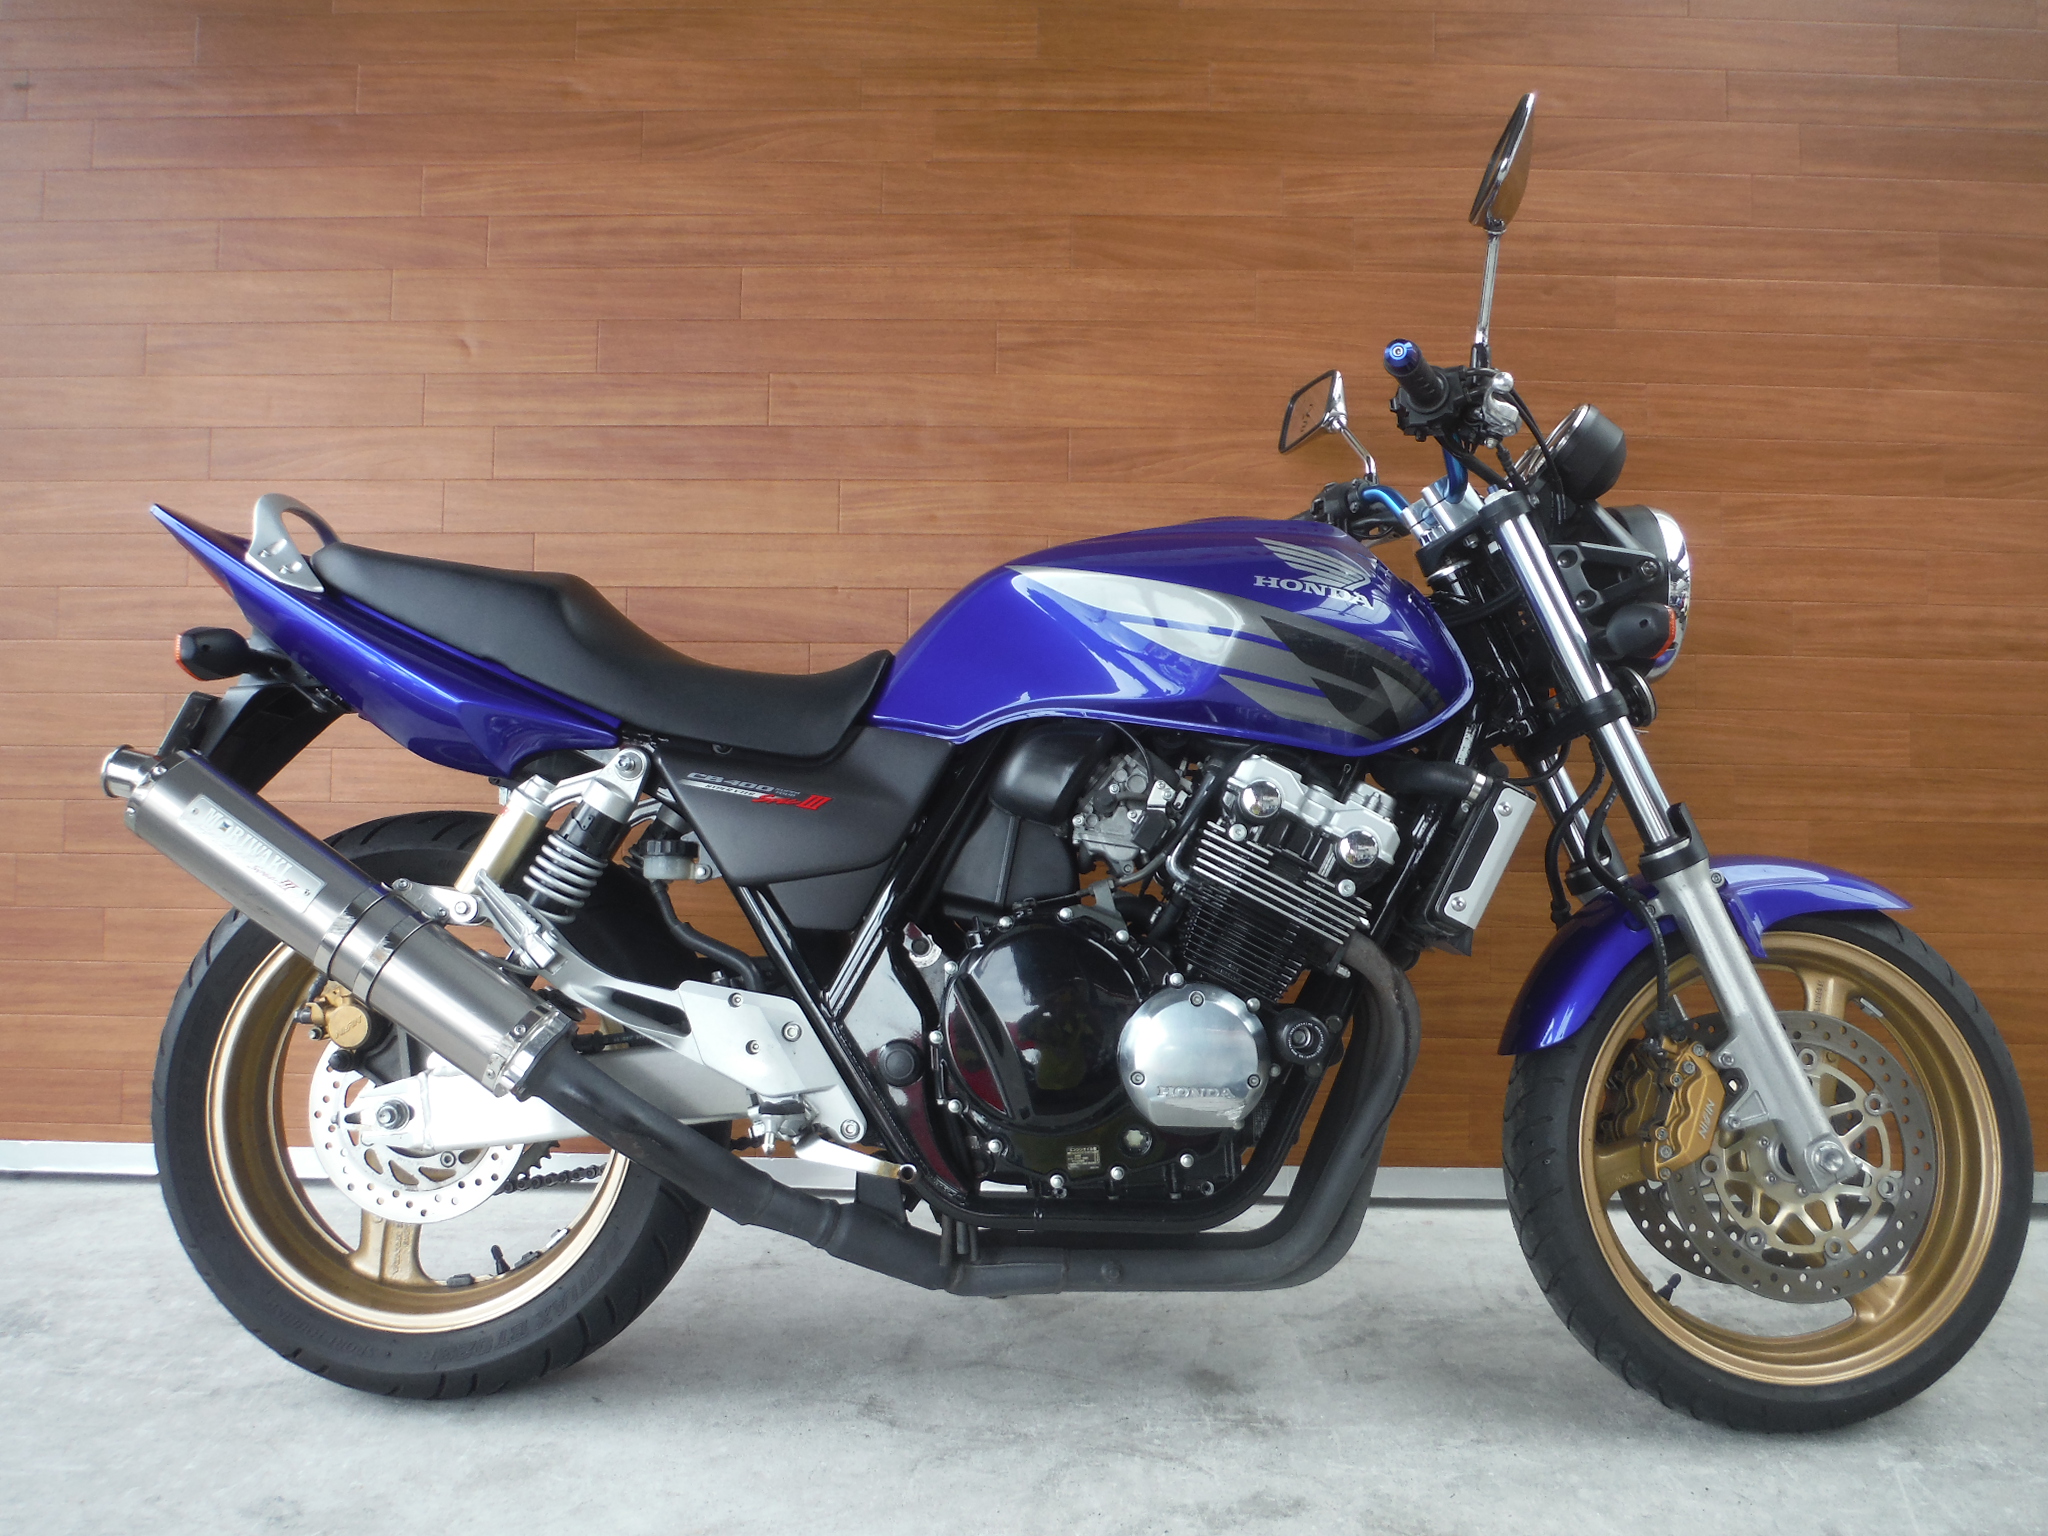 熊本中古車バイク情報 ホンダ Cb400sf 400 2005年モデル 青 熊本のバイクショップ アール バイクの新車 中古車販売や買取 レンタル バイクのことならおまかせください